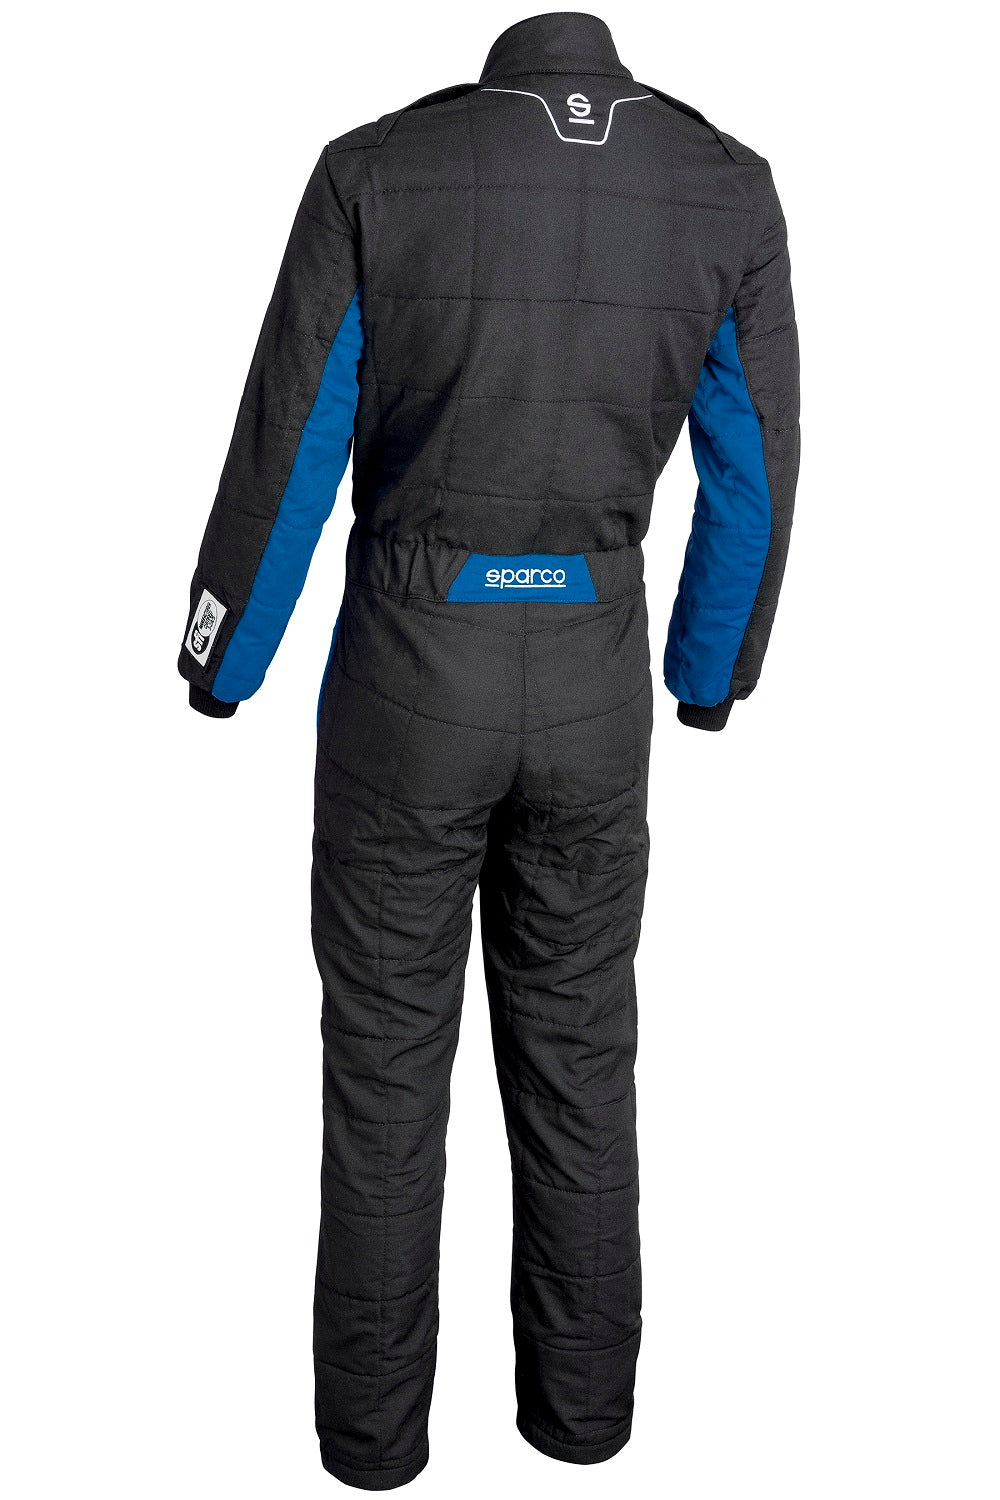 Sparco Conquest 3.0 Race Suit Black / Blue Rear Image